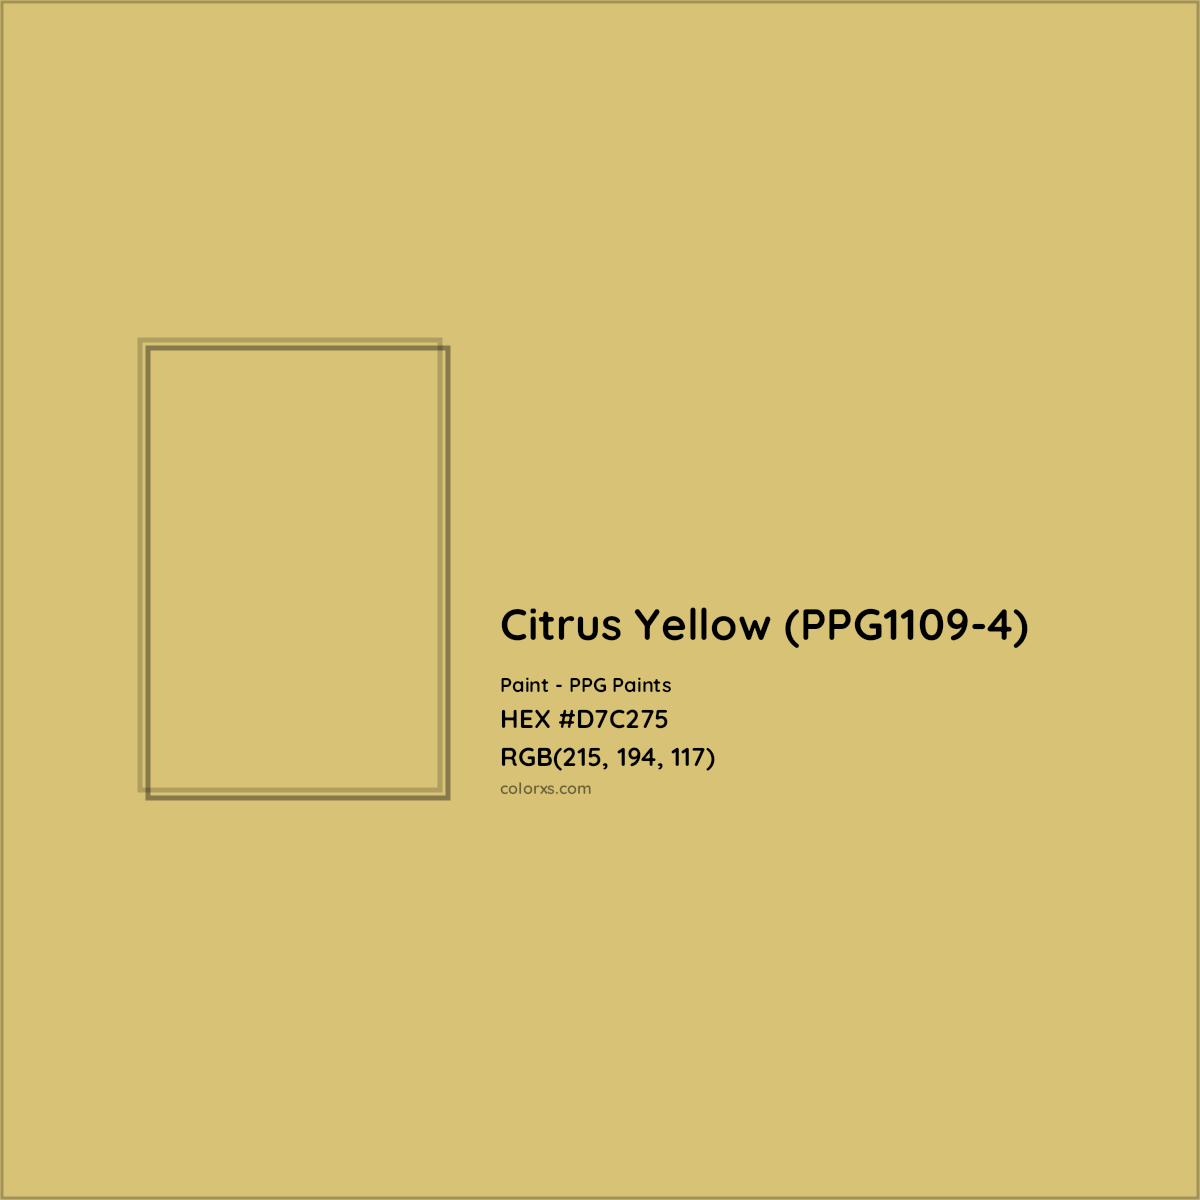 HEX #D7C275 Citrus Yellow (PPG1109-4) Paint PPG Paints - Color Code